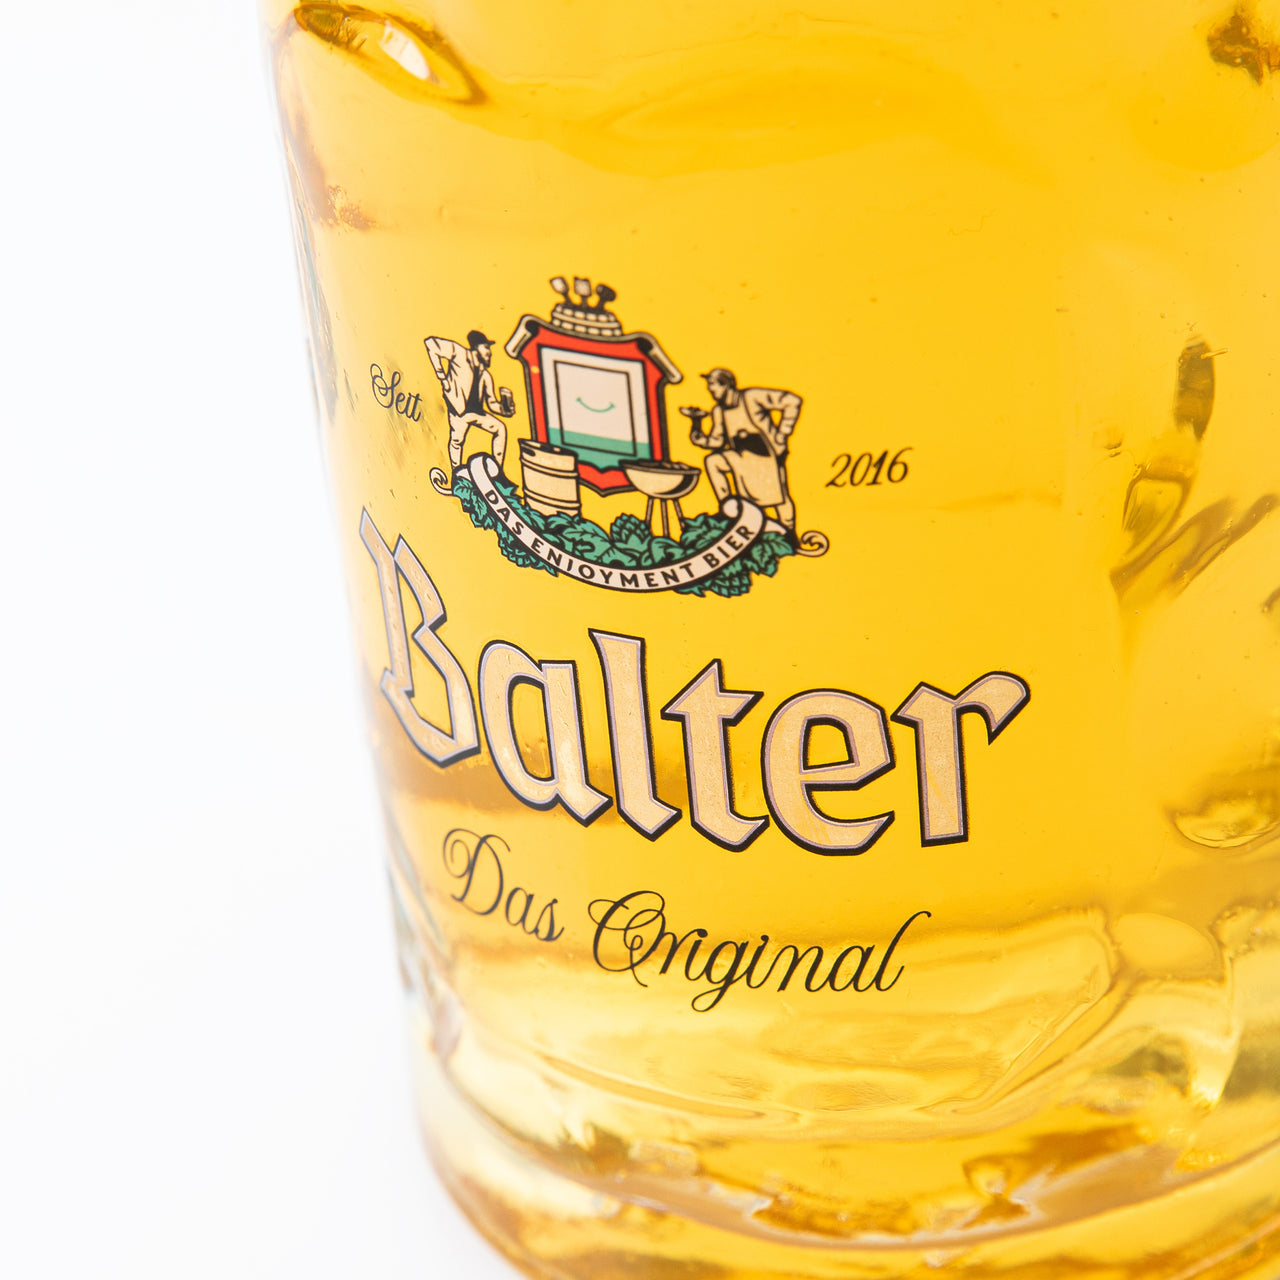 Balter 'Das Original' 500mL Stein Glass